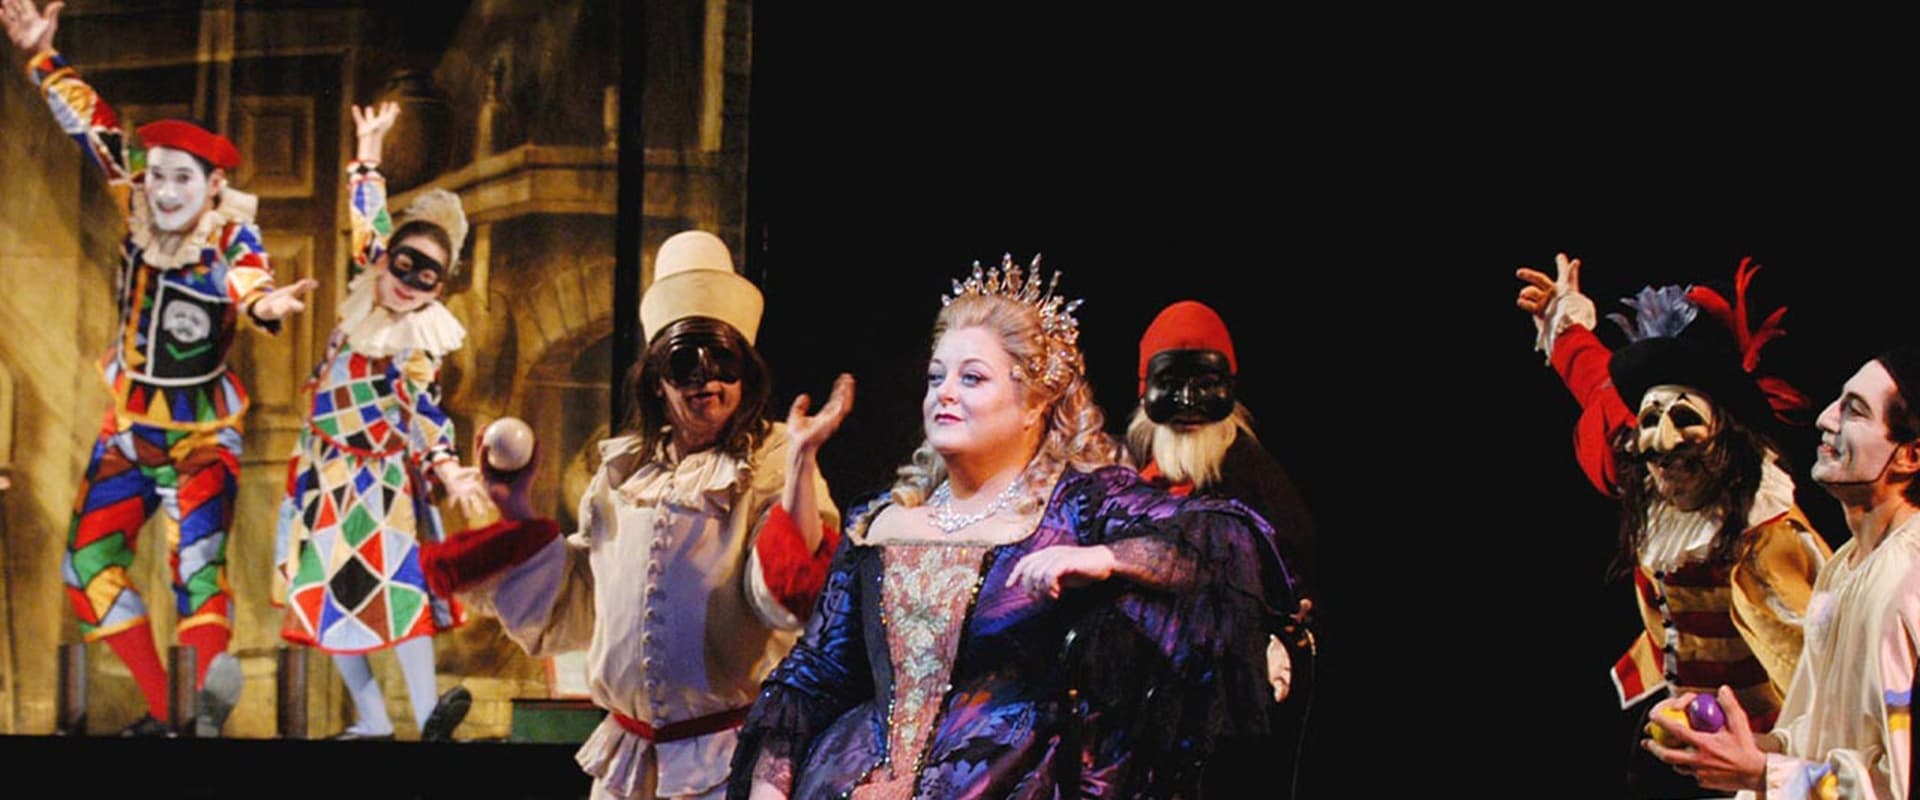 The Metropolitan Opera: Ariadne auf Naxos